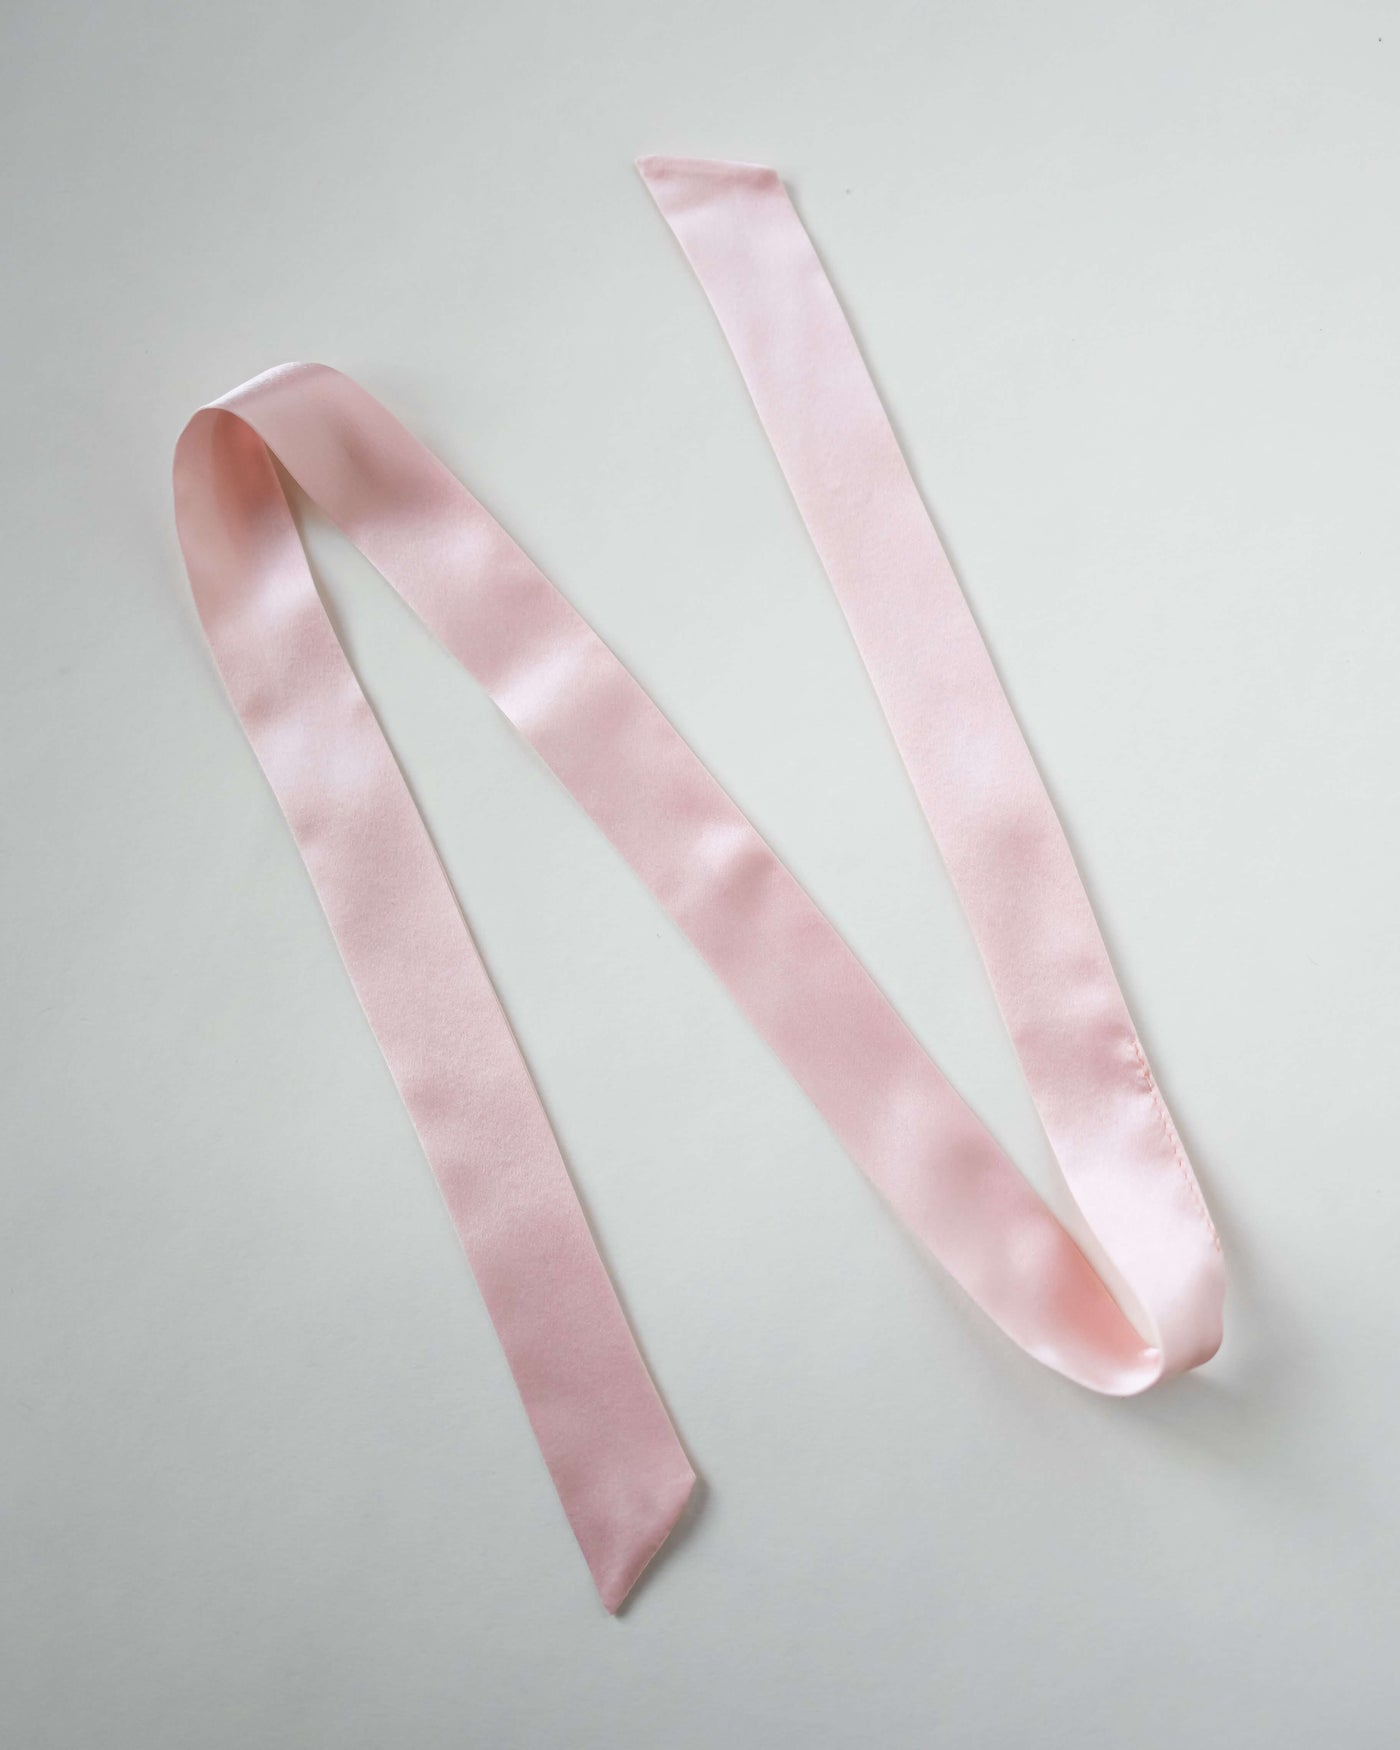 Haarband aus reiner Seide in rosa von Curly'N'Covered vor weißem Hintergrund ausgelegt